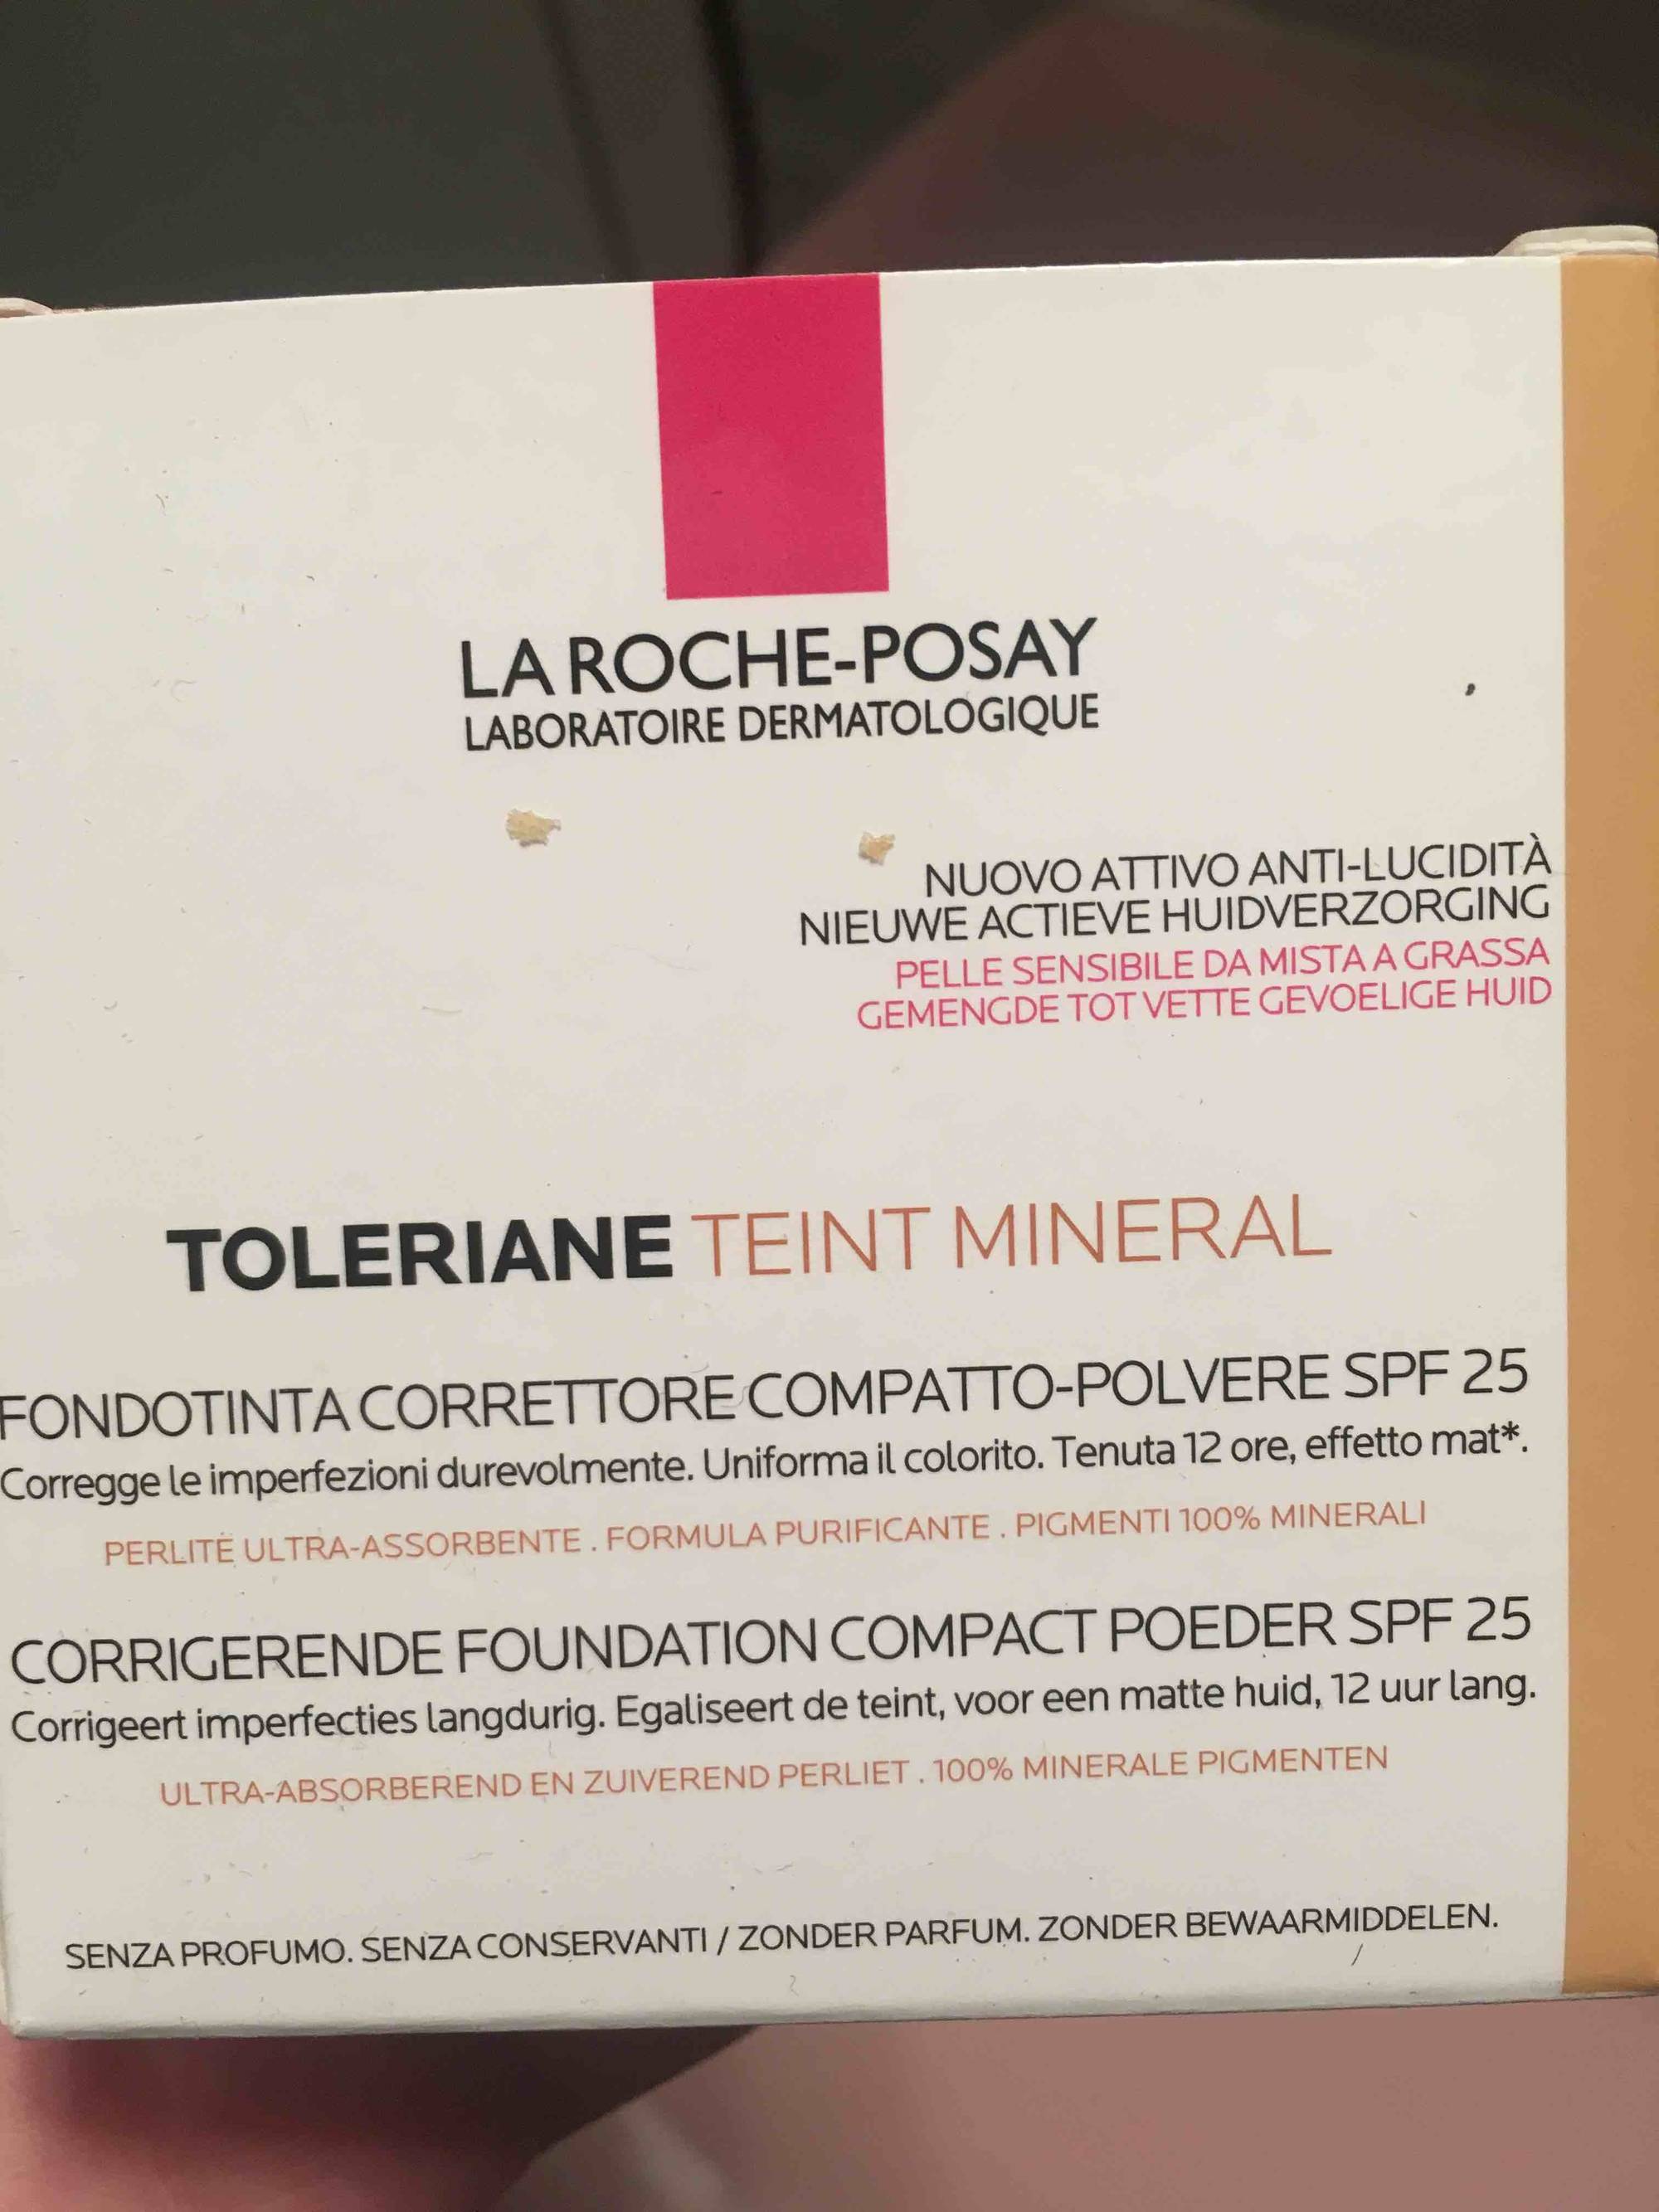 LA ROCHE-POSAY - Toleriane teint mineral